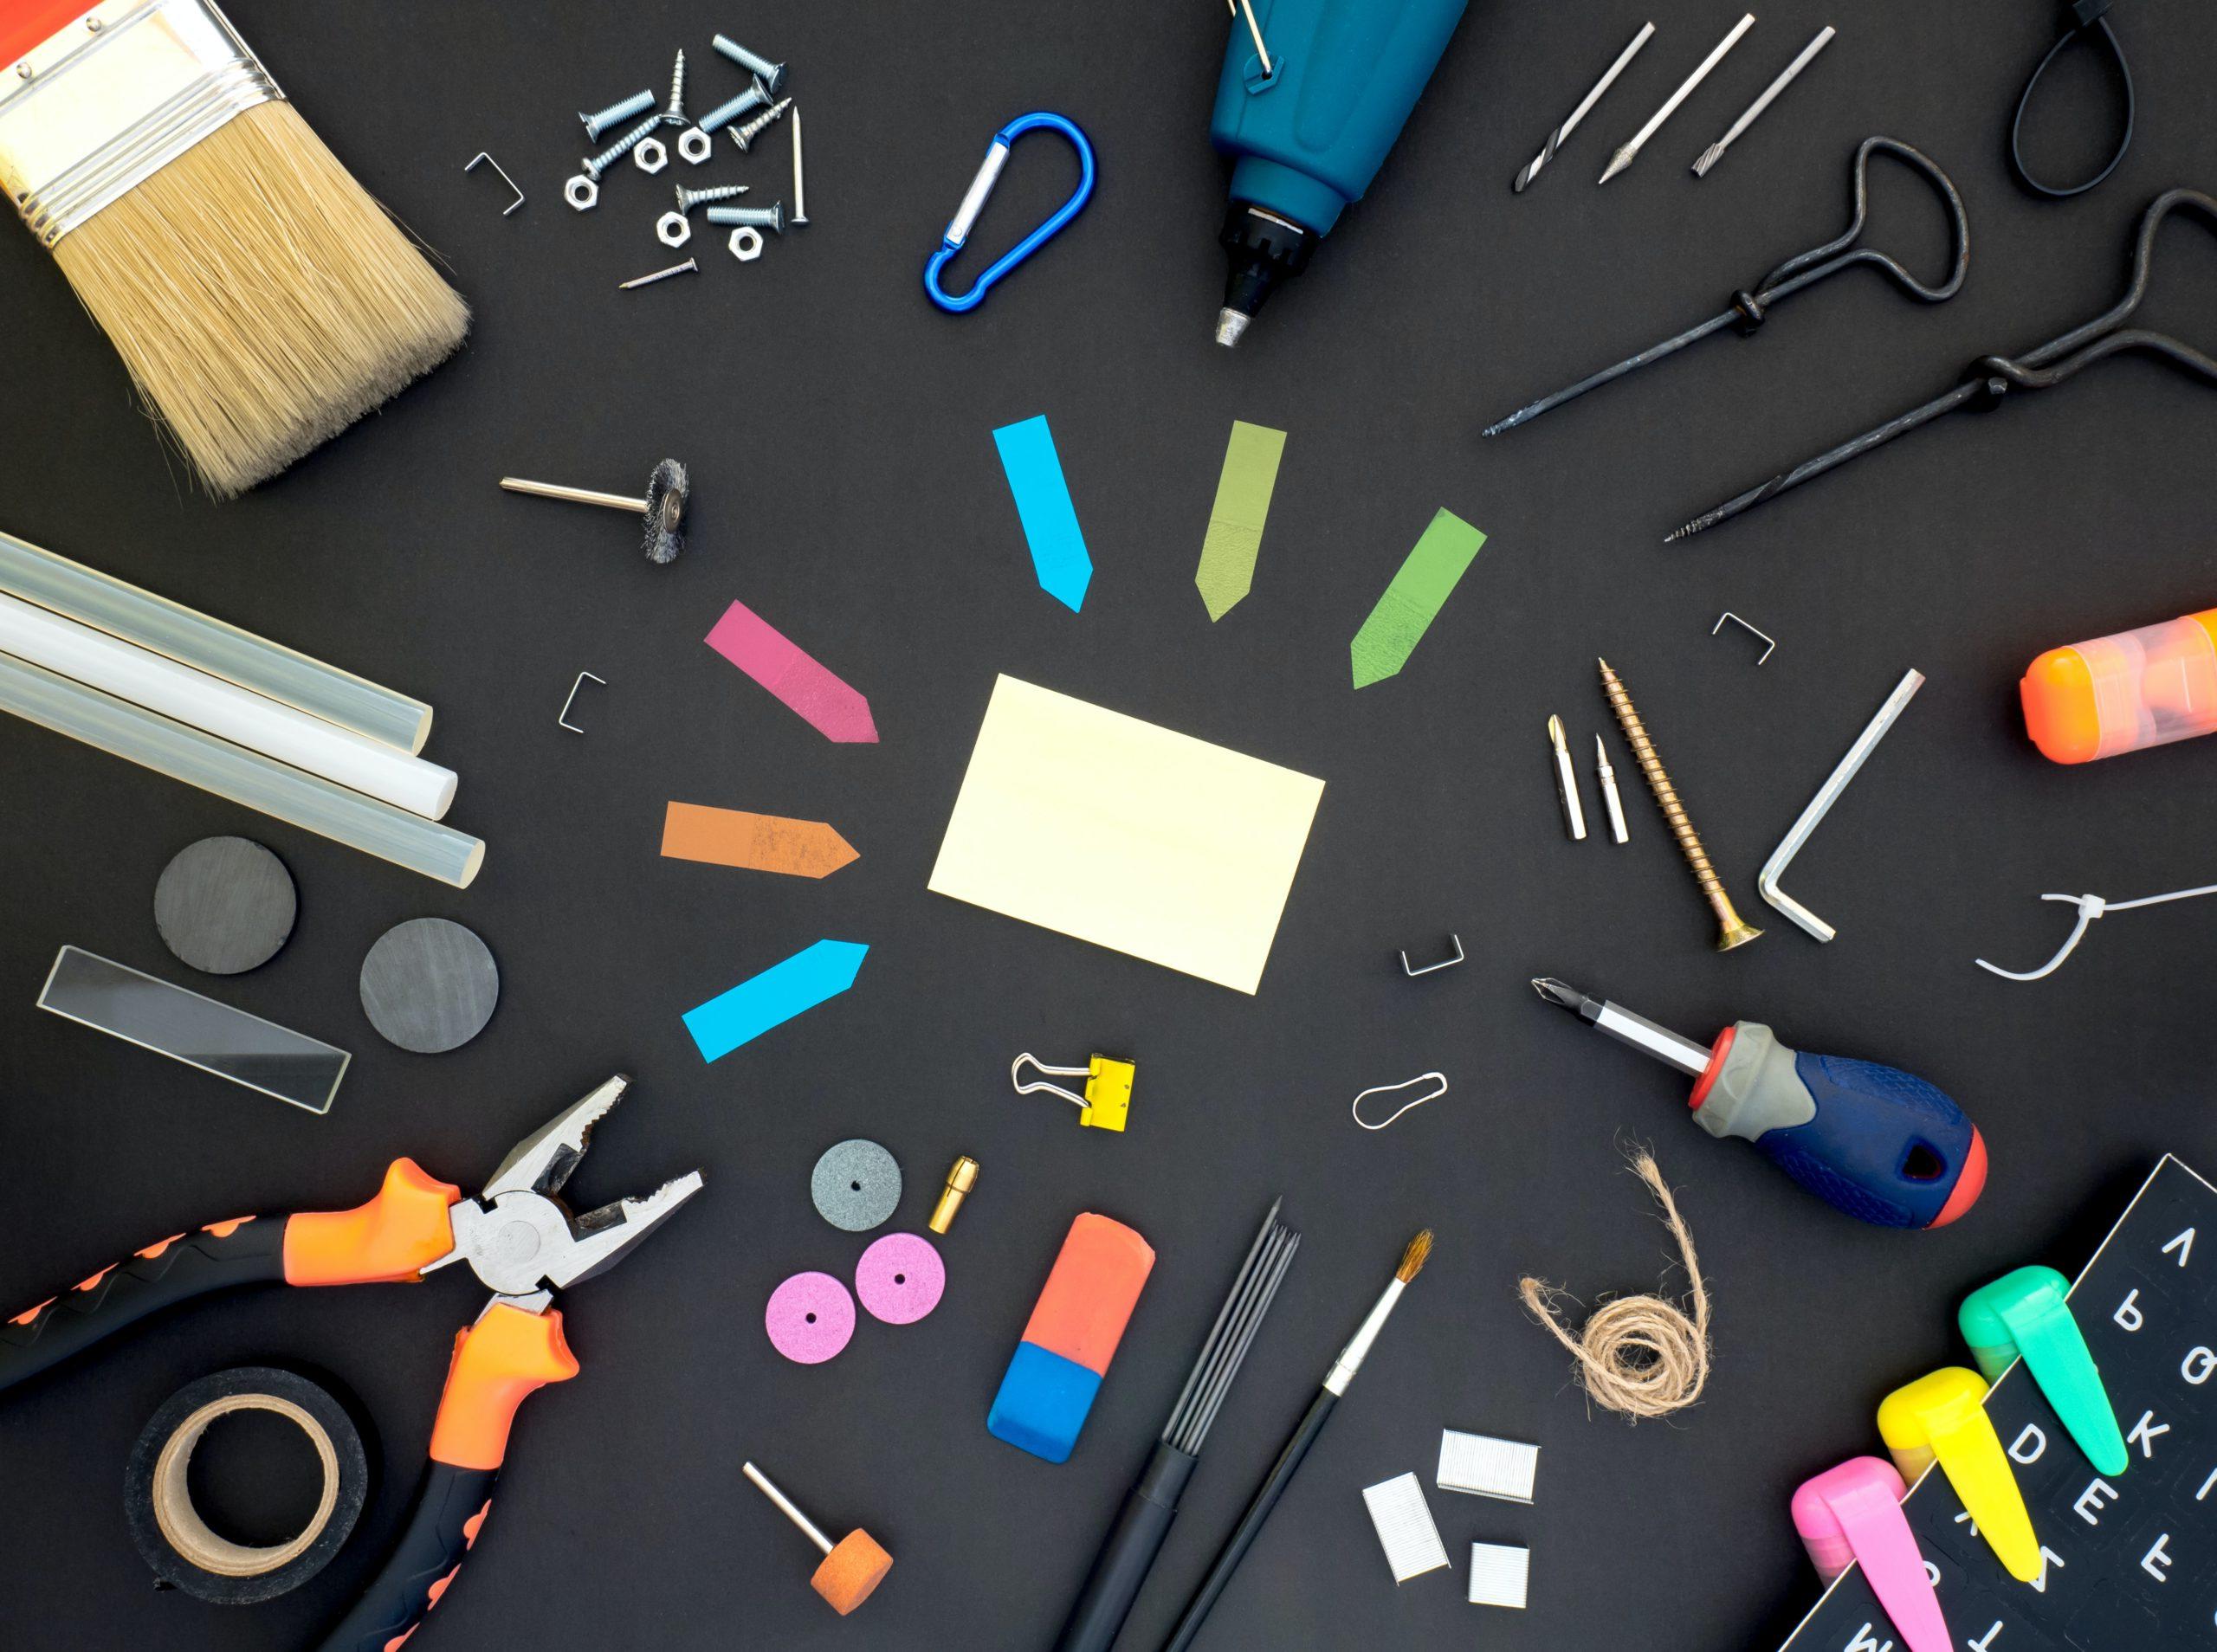 An assortment of tools laying on a black surface including post-its, 螺丝刀, 扳手, 磁带, 画笔, 笔用, 胶棒, 斯台普斯, 磁铁, 和回形针.